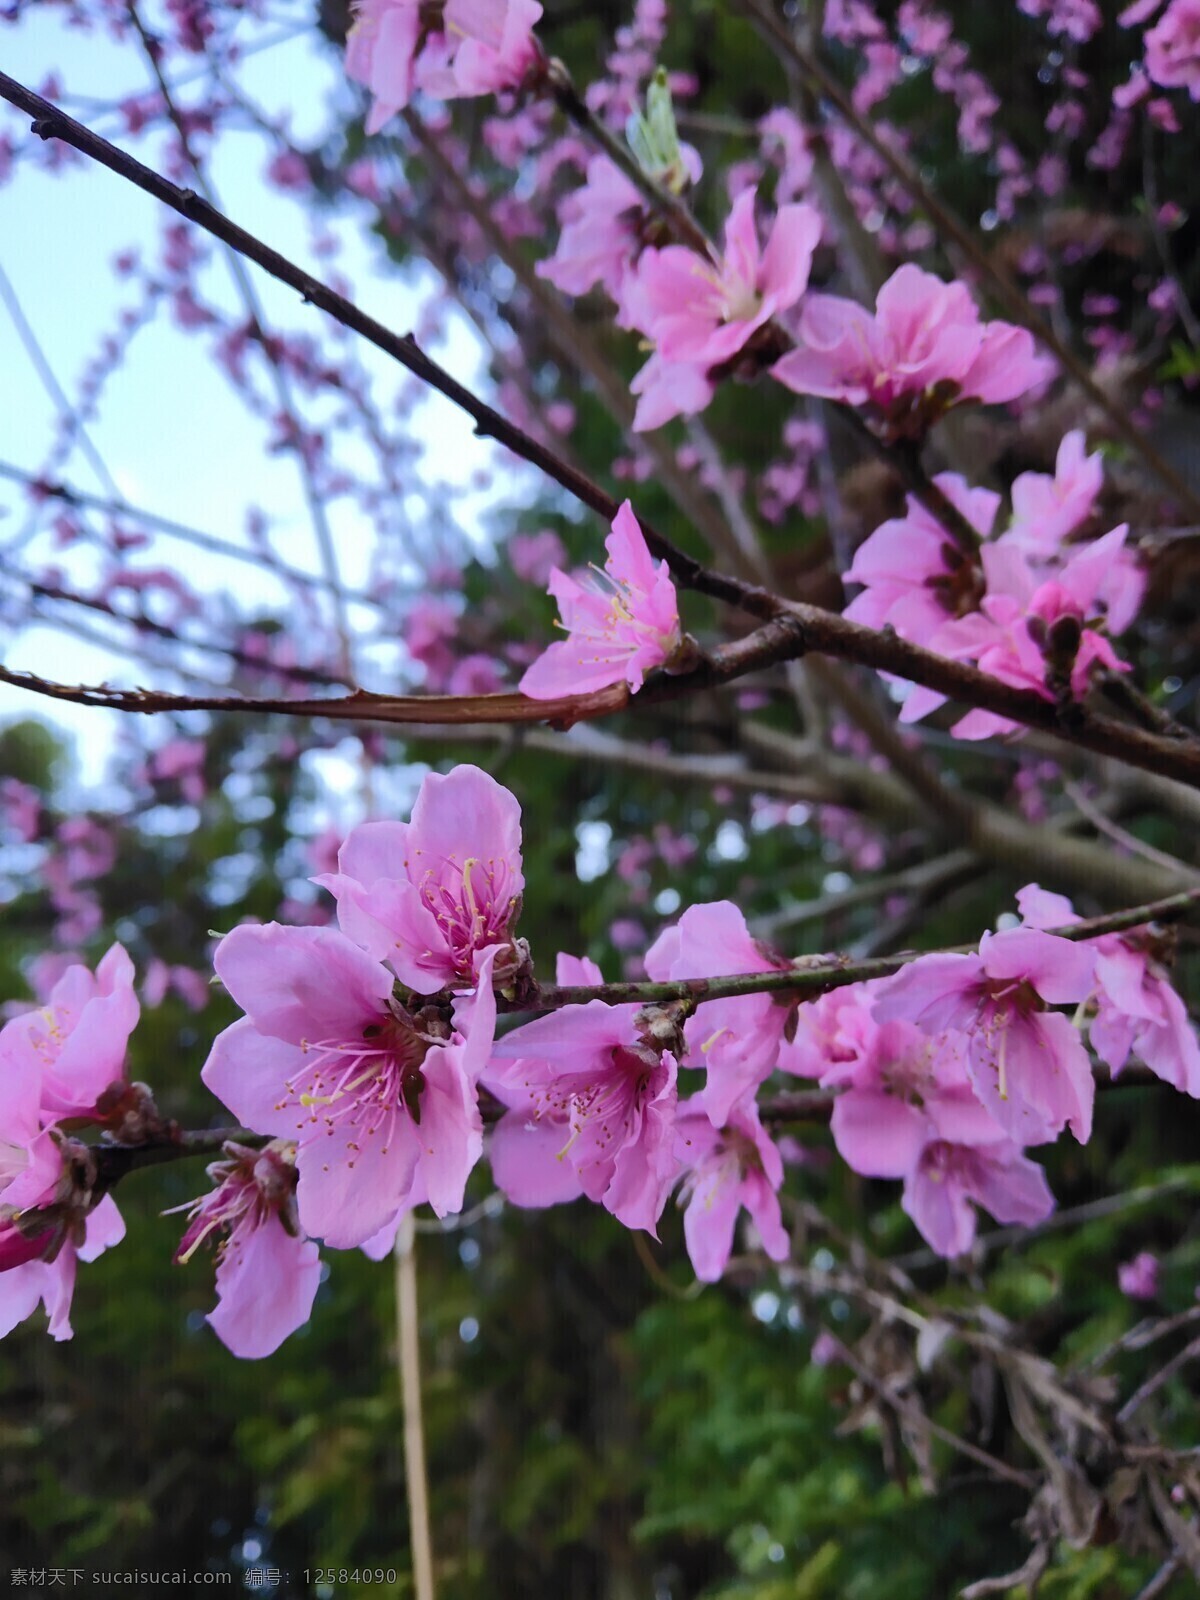 春天的桃花 桃红 尽在春 淡雅的色彩 芳香 清新 自然景观 田园风光